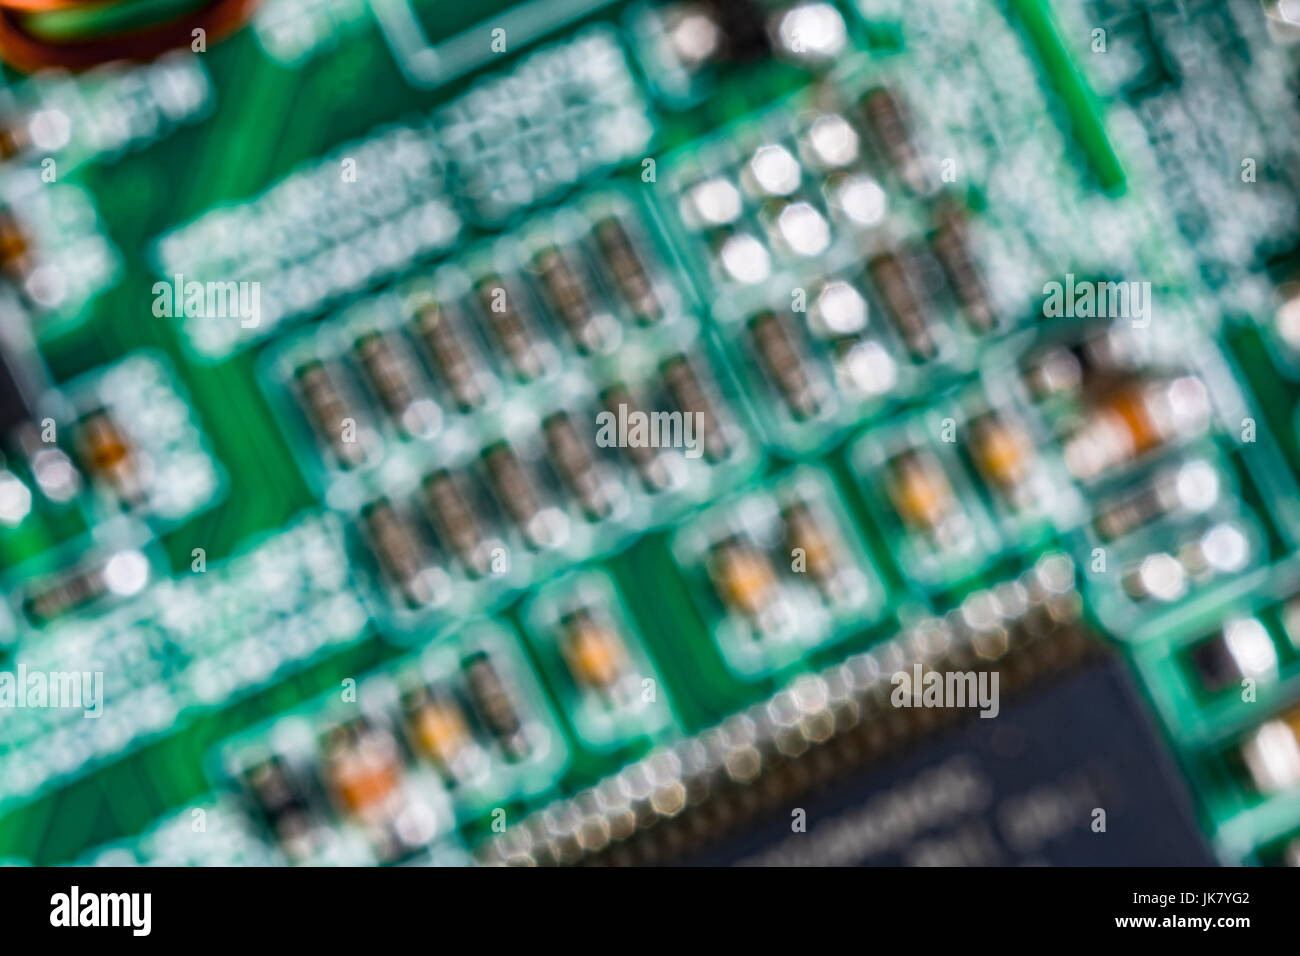 Al di fuori della messa a fuoco immagine di componenti su un verde scheda a circuito stampato (pcb). Foto Stock